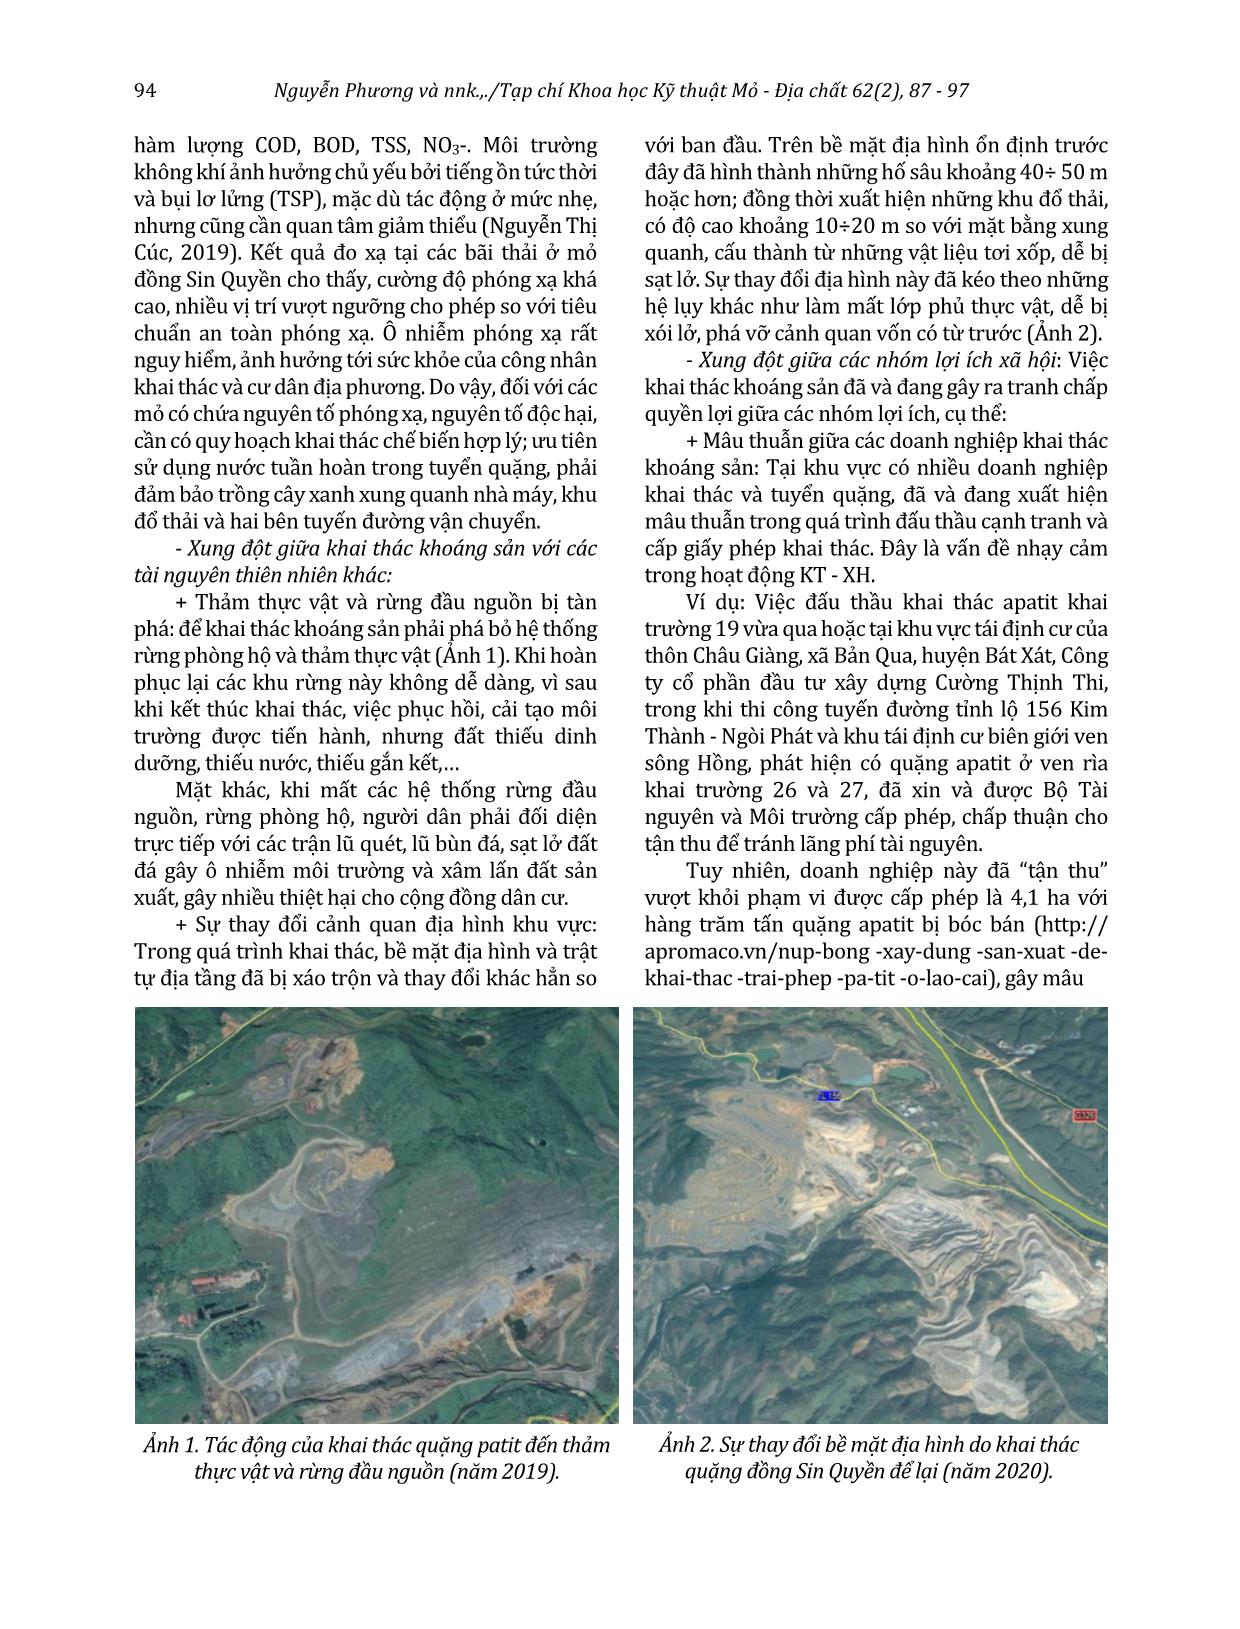 Nghiên cứu nhận diện các dạng xung đột môi trường trong họat động khoáng sản ở tỉnh Lào Cai và đề xuất giải pháp phát triển bền vững trang 8